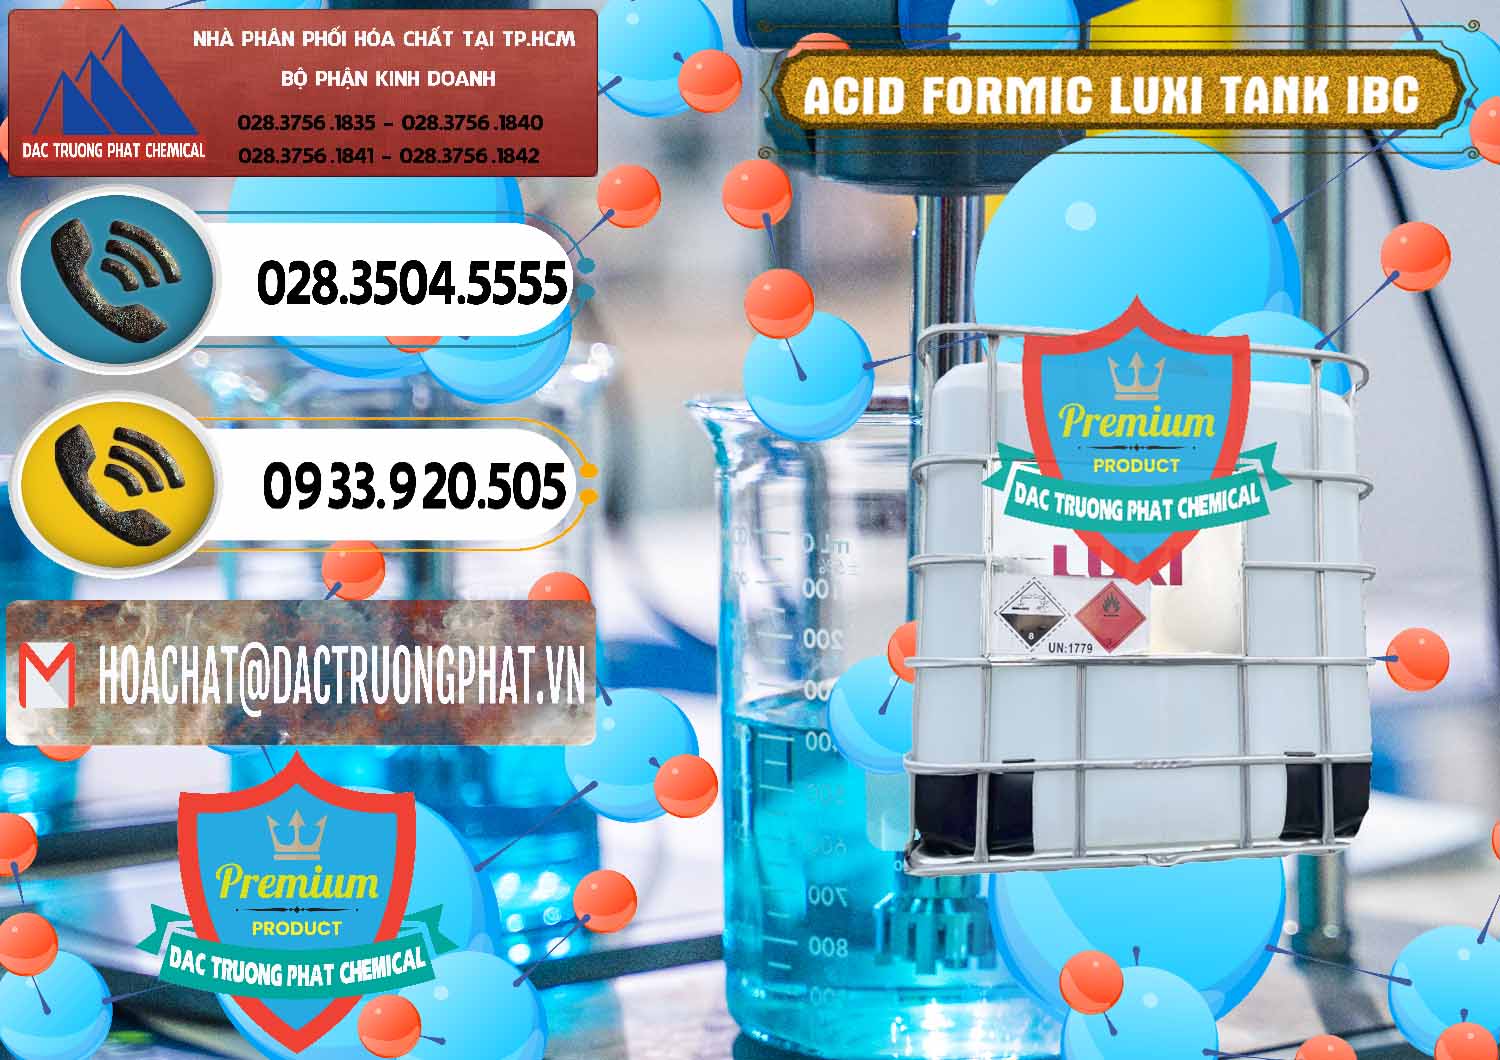 Công ty bán và cung ứng Acid Formic - Acid Formic Tank - Bồn IBC Luxi Trung Quốc China - 0400 - Nơi chuyên kinh doanh - cung cấp hóa chất tại TP.HCM - hoachatdetnhuom.vn